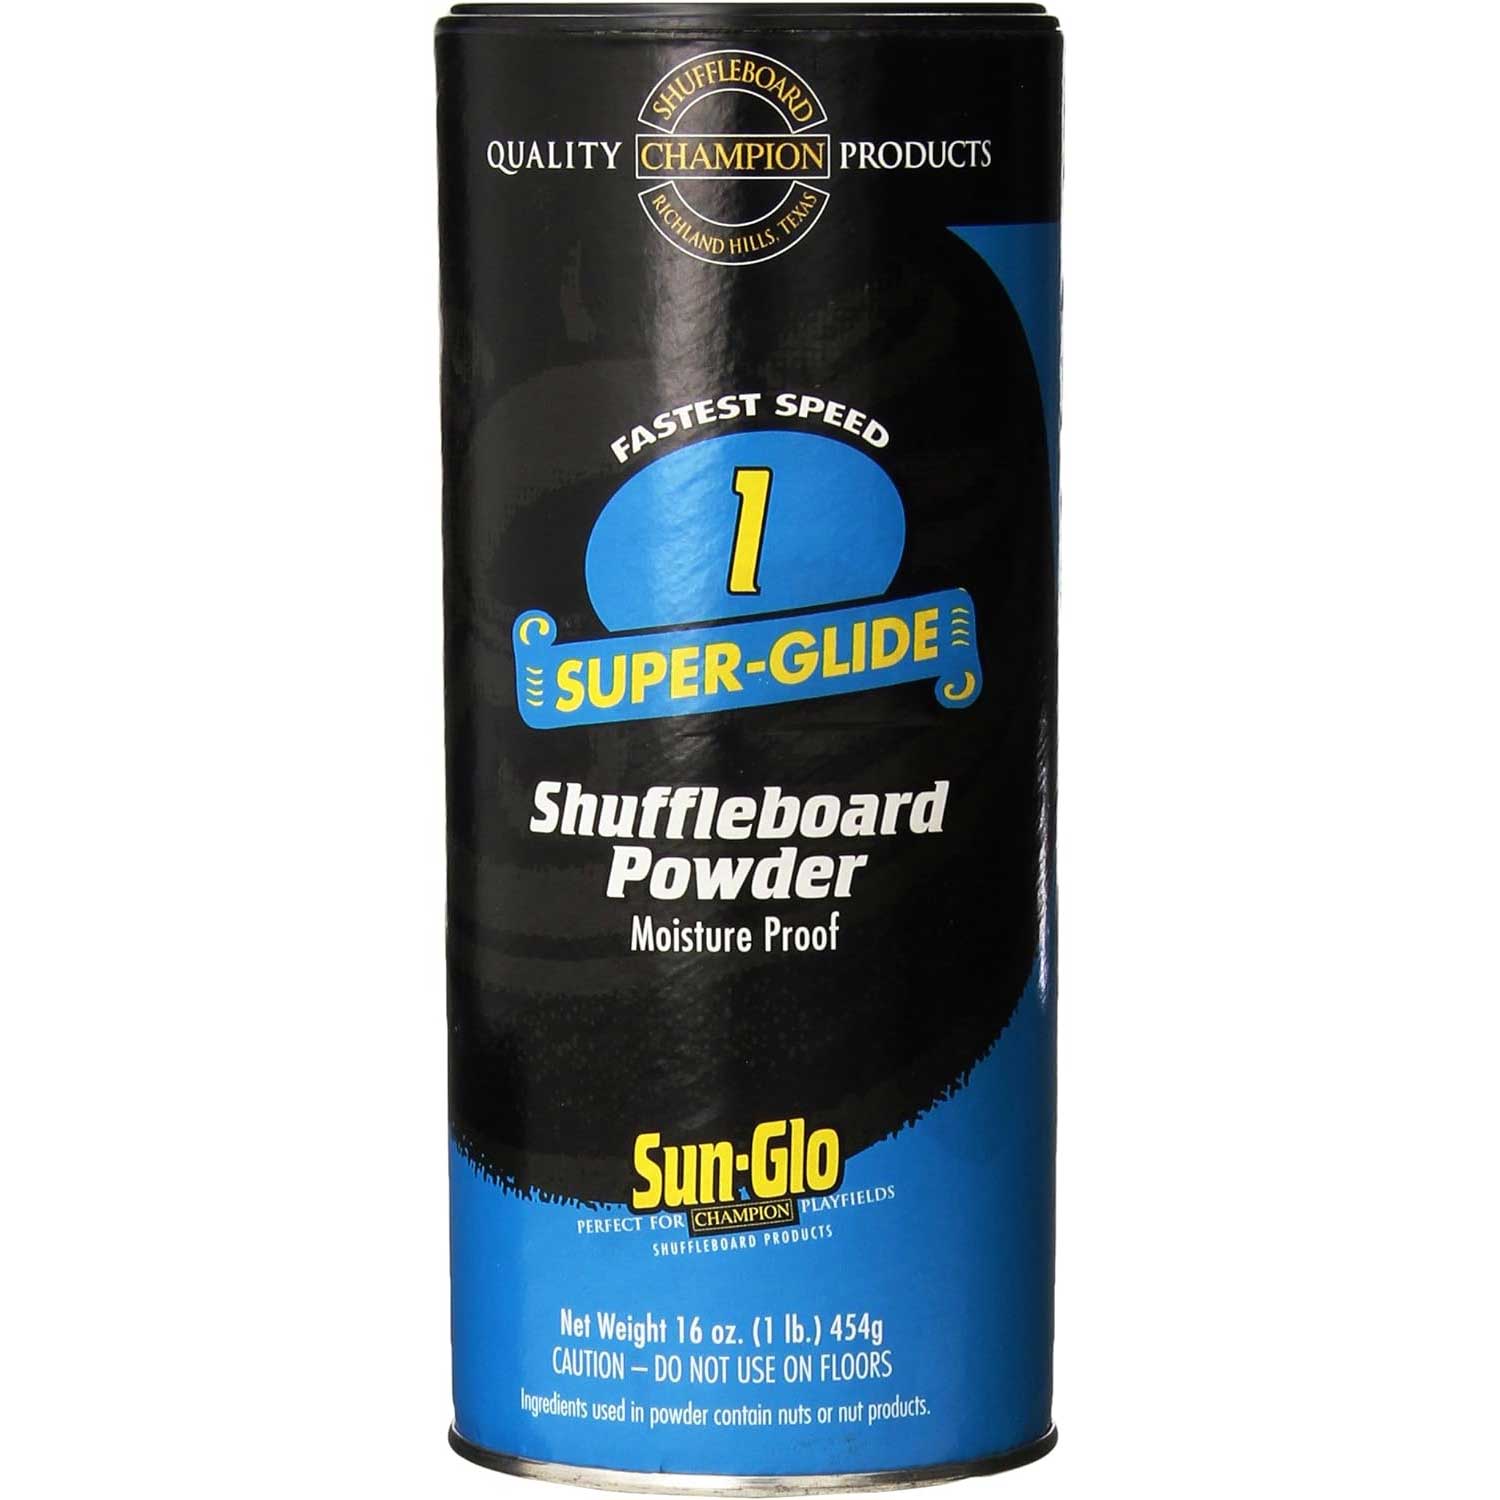 Sun-Glo Speed 1 Shuffleboard Powder  (The fastest)